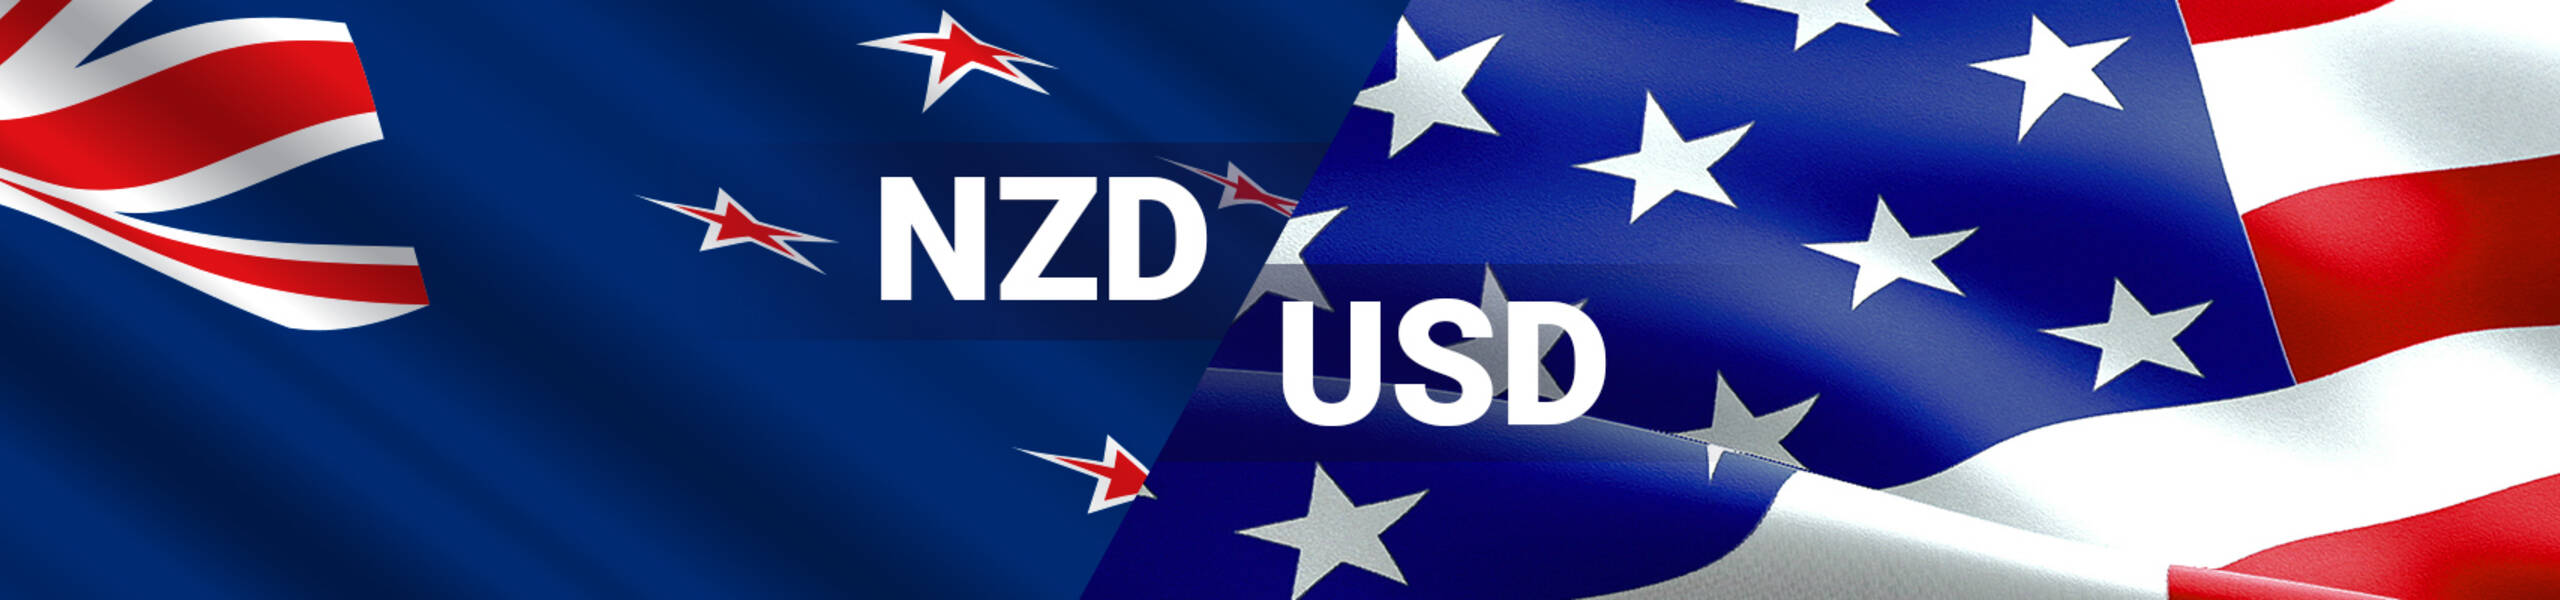 NZDUSD dalam bullish flag - Analisis - 17-04-2018